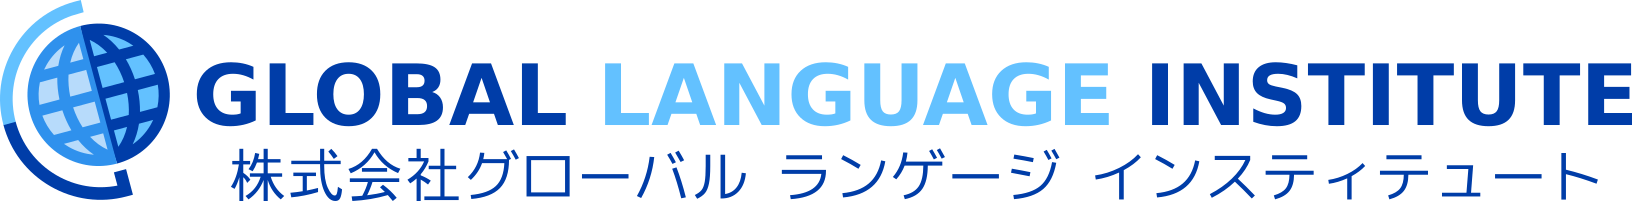 global_language_institute